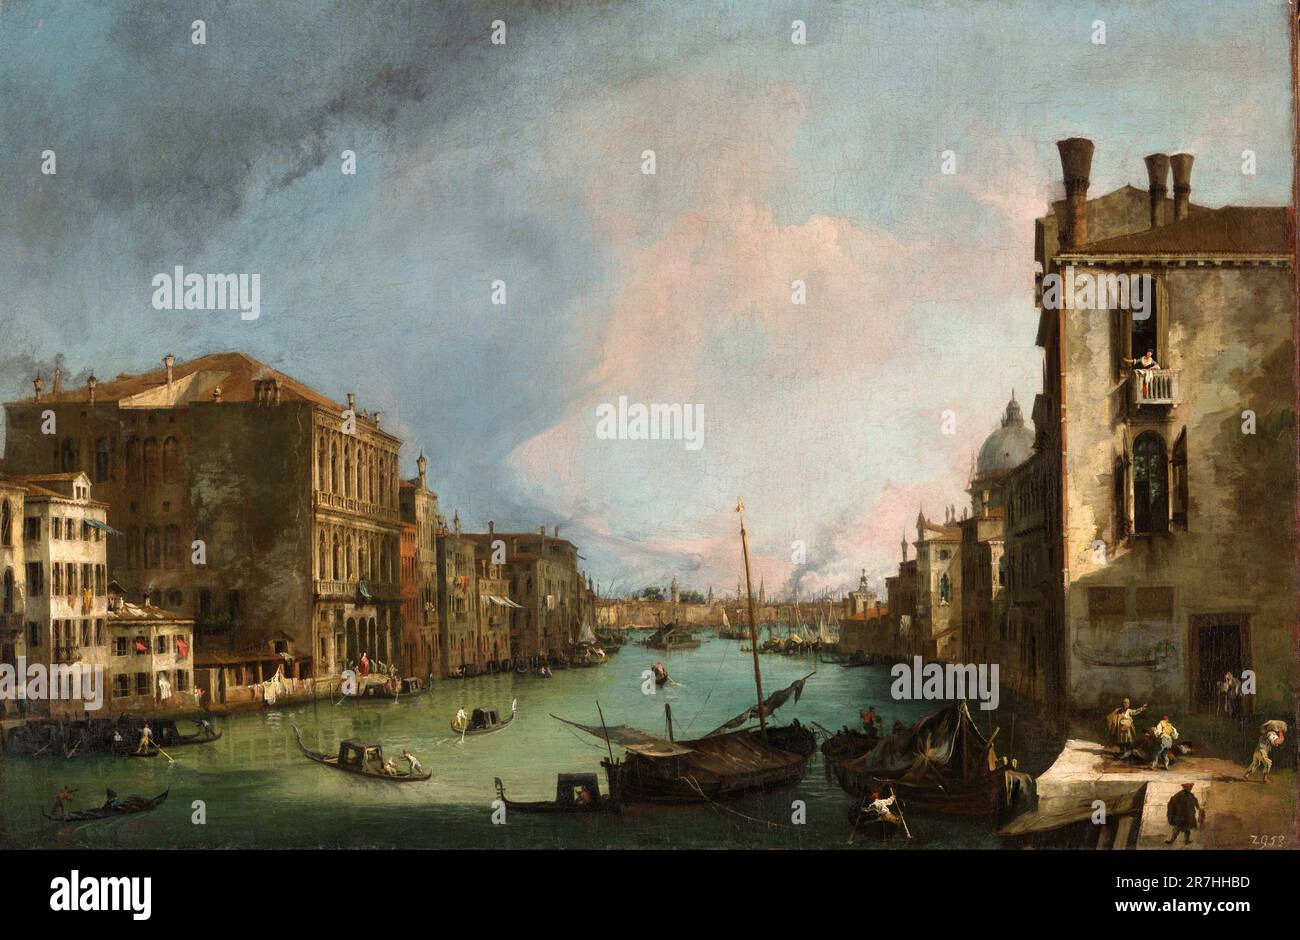 El Gran Canal de Venecia con el Palazzo Corner Ca’Grande pintado por el pintor veneciano Giovanni Antonio Canal, comúnmente conocido como Canaletto, en 1722 Foto de stock